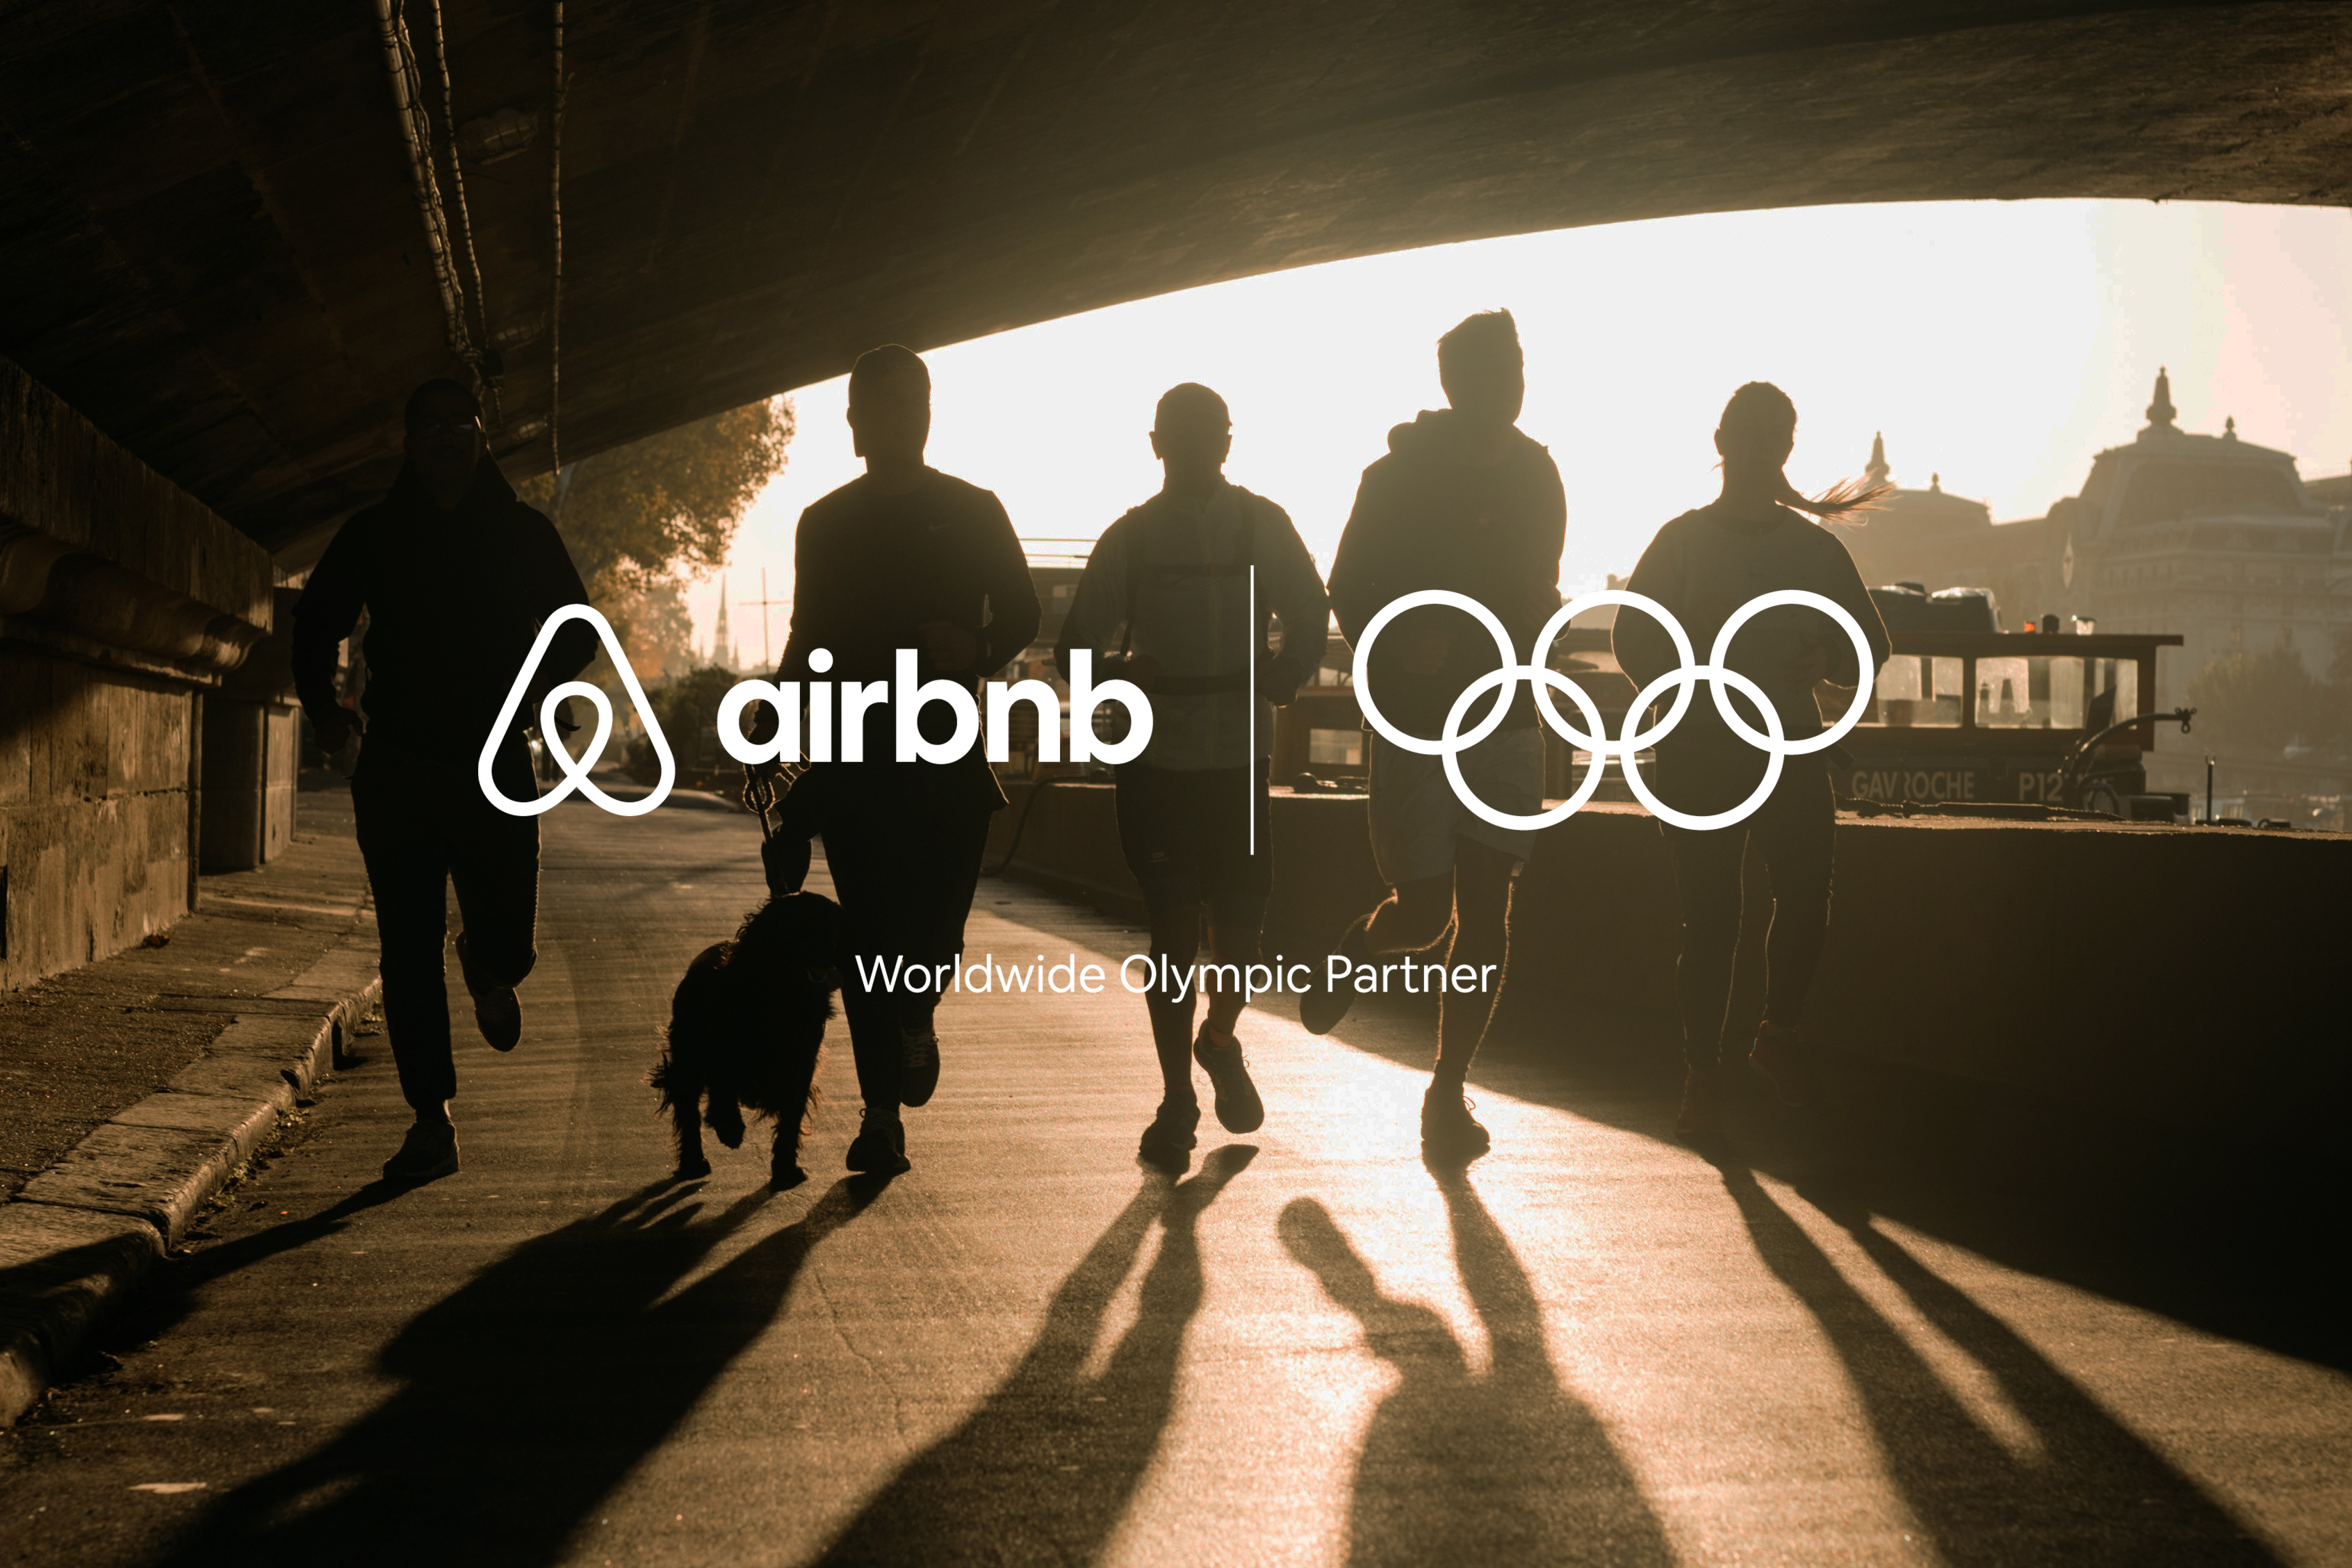 Airbnb et le CIO annoncent un partenariat d'envergure mondiale pour les JO